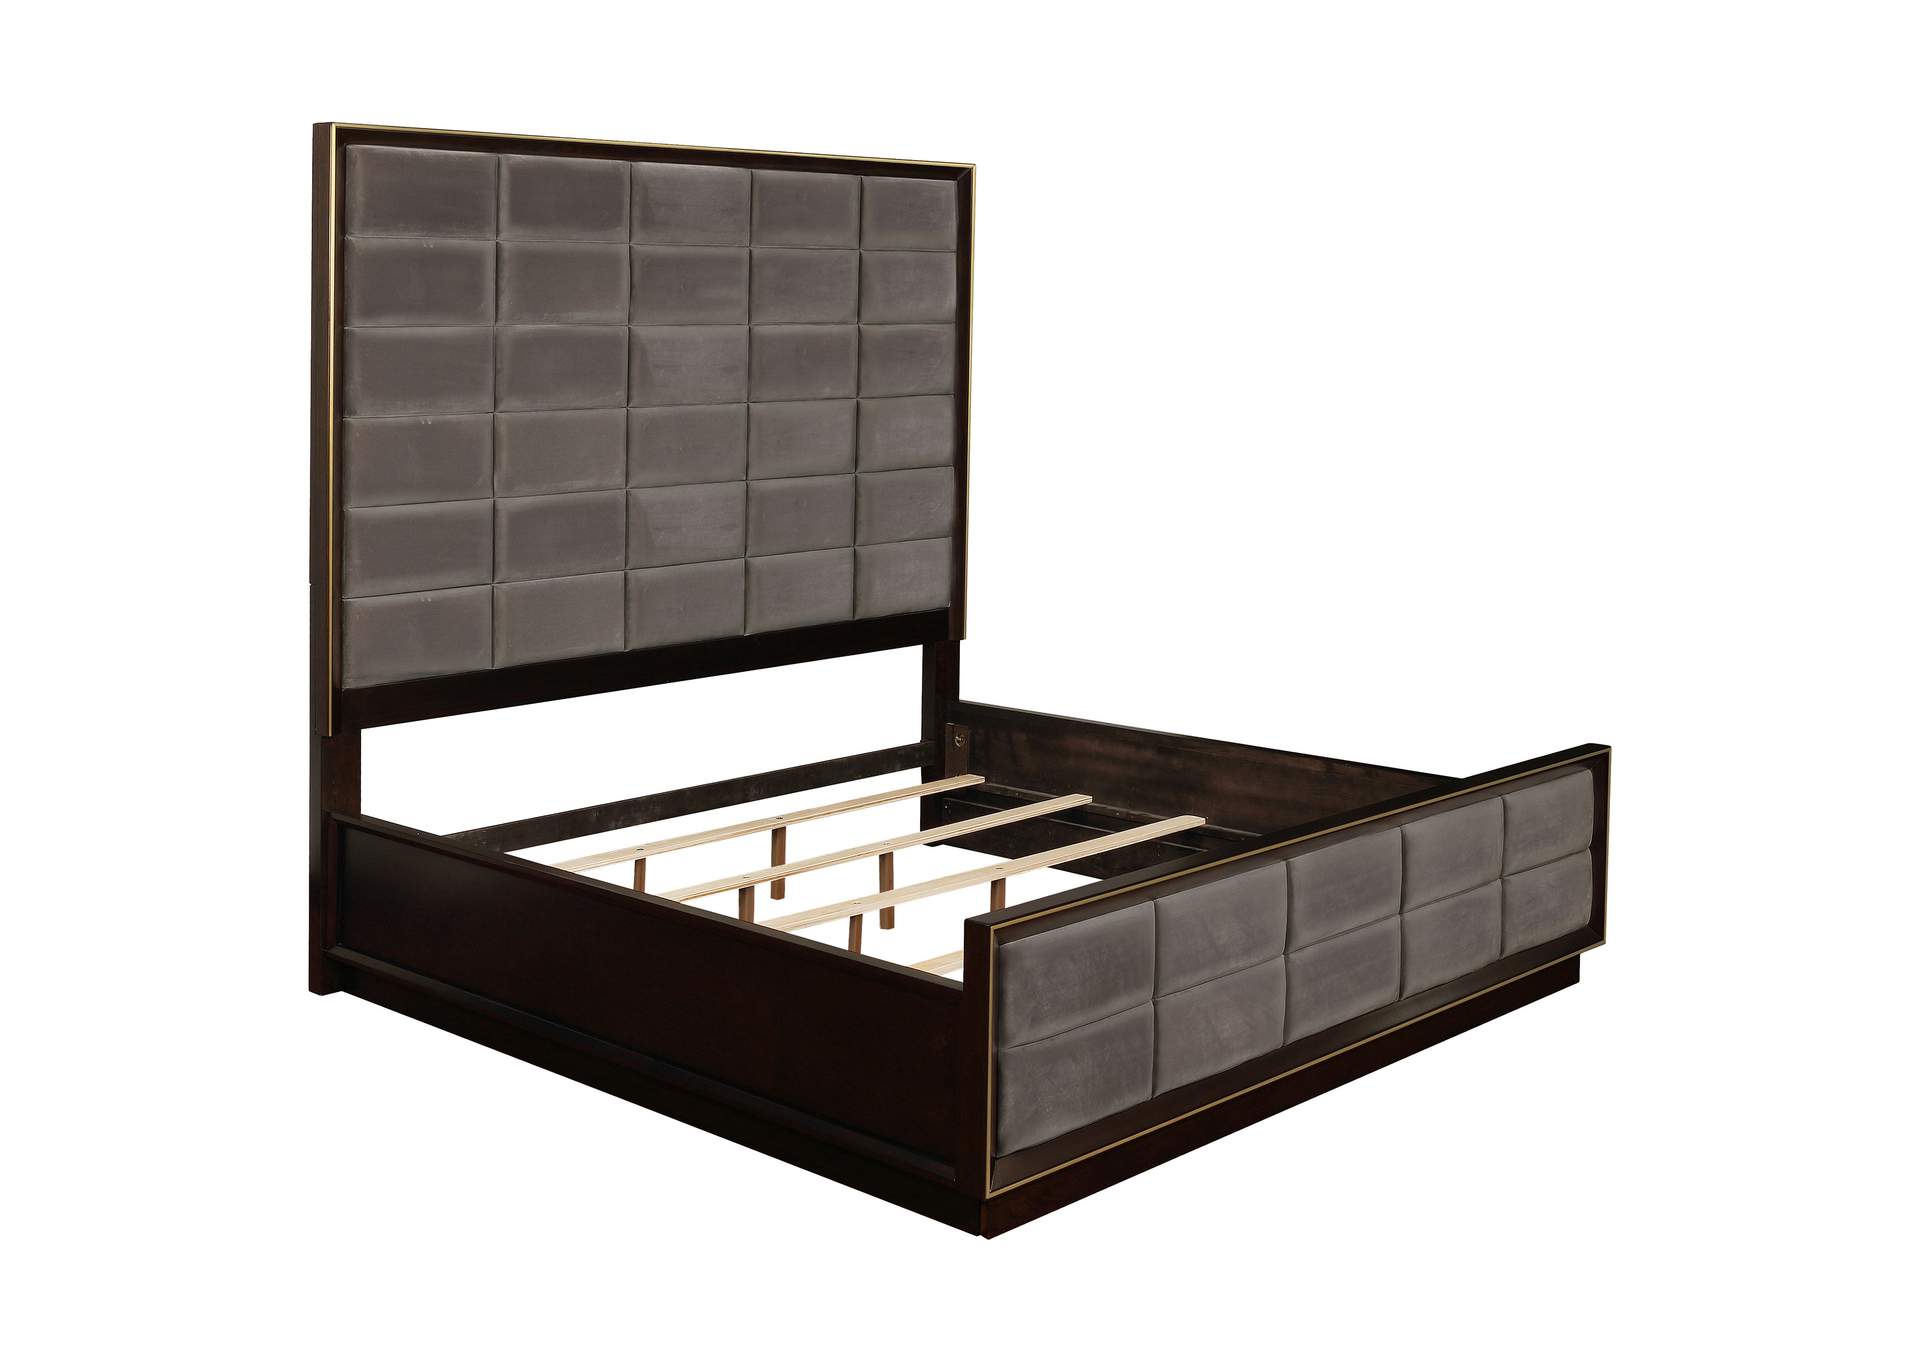 Durango 5-piece Queen Panel Bedroom Set Grey and Smoked Peppercorn,Coaster Furniture